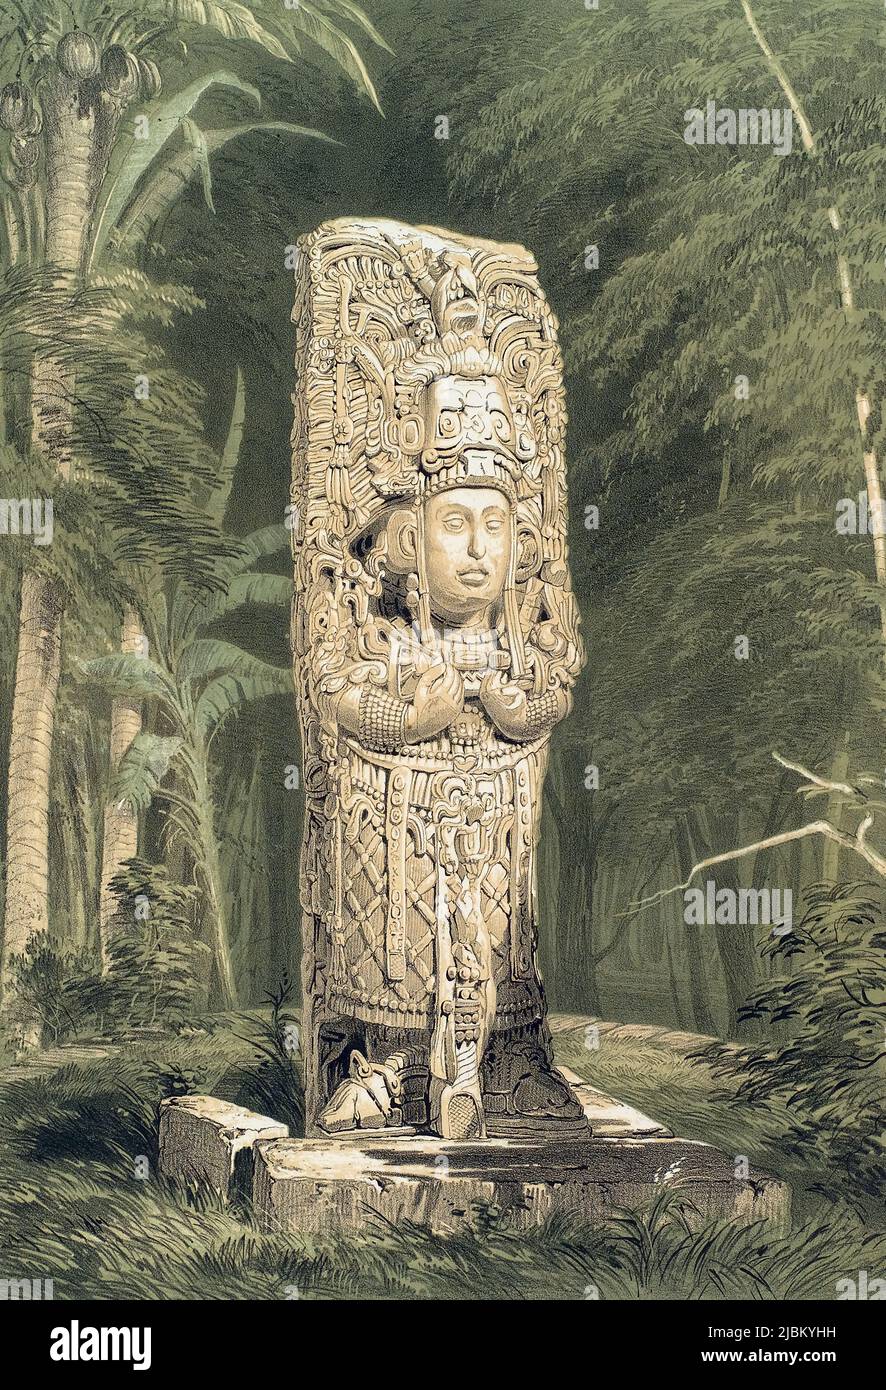 Ein Idol in Copan, Honduras. Nach einer Arbeit von Frederick Catherwood. Das Maya-Idol in der Maya-Stadt ist als Stela H bekannt und repräsentiert König Uaxaclajuun Ub'aah K'awiil. Es stammt aus dem 8.. Jahrhundert. Stockfoto